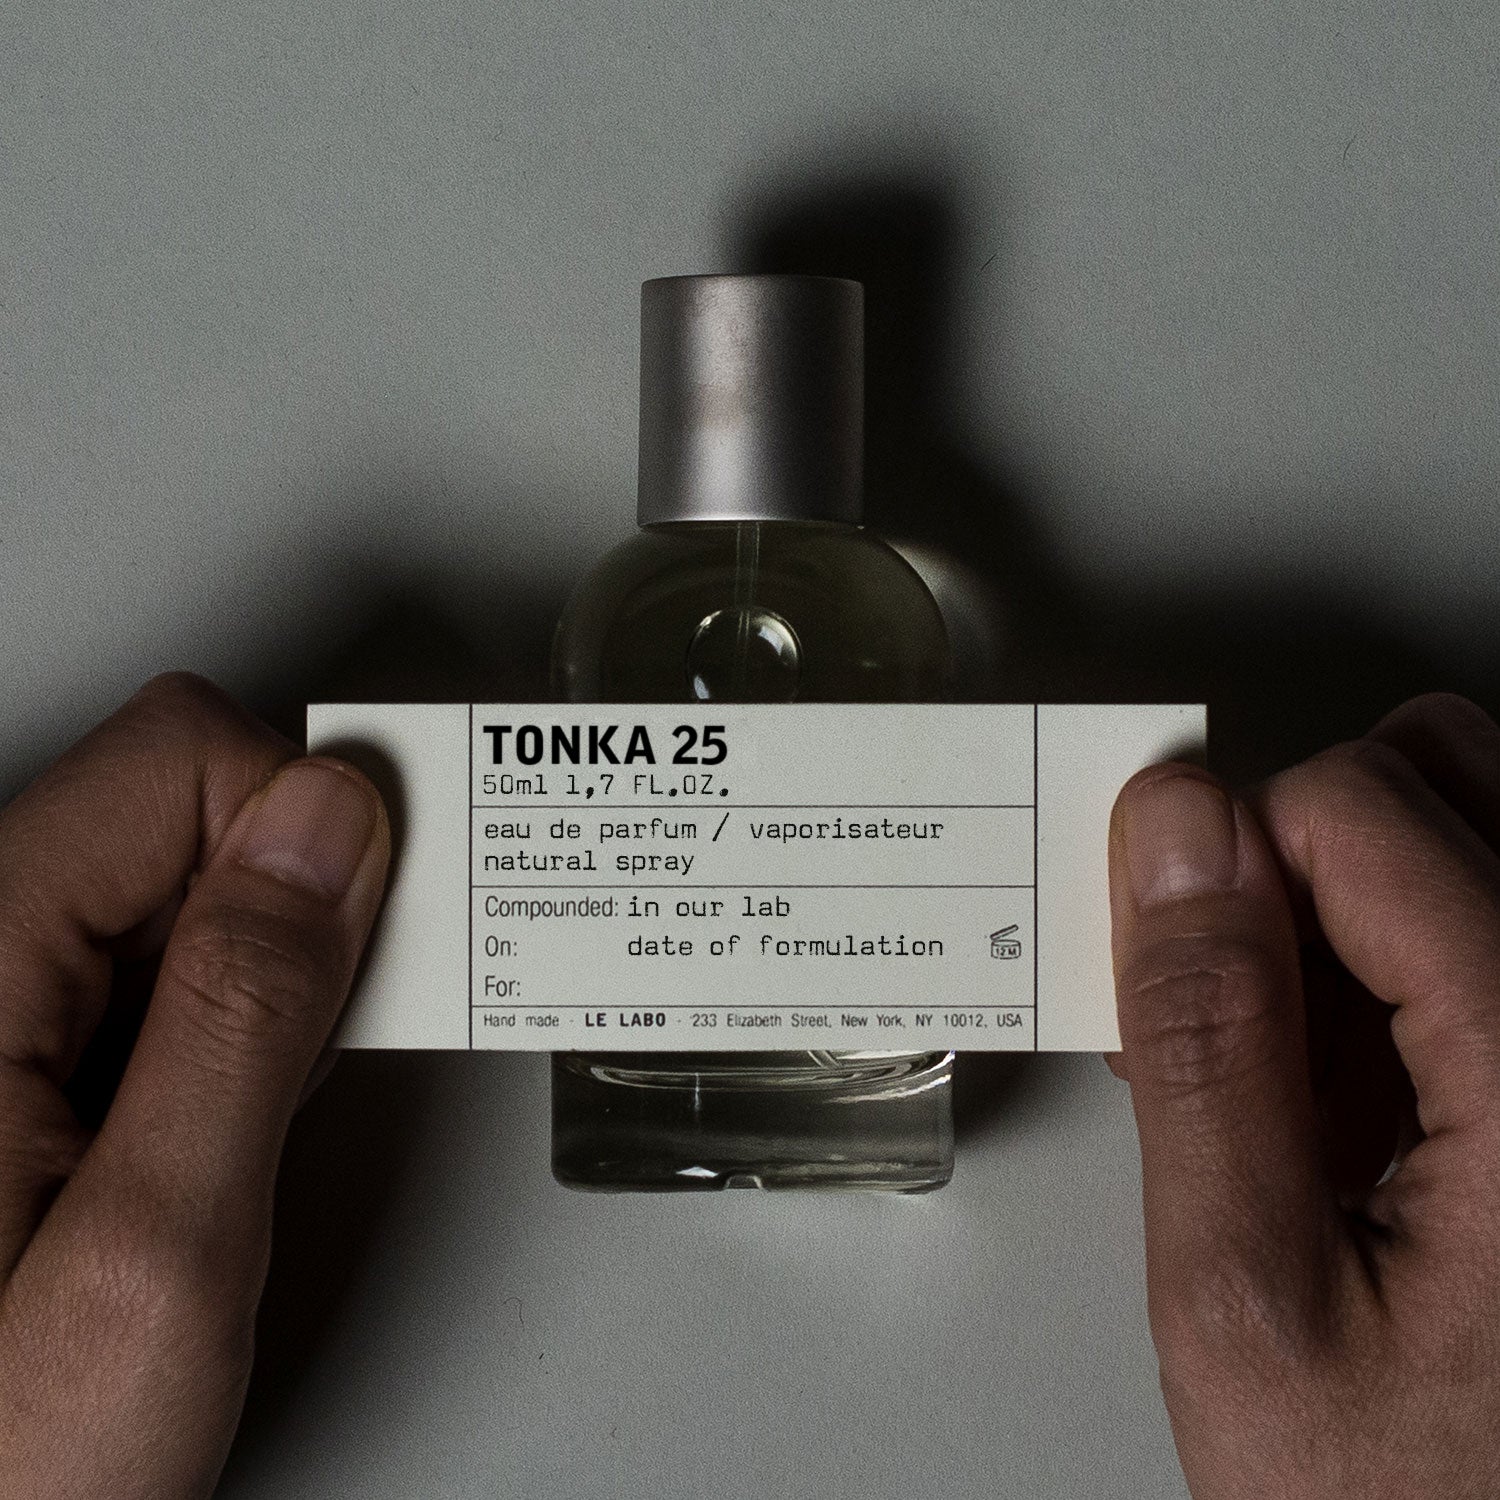 TONKA 25